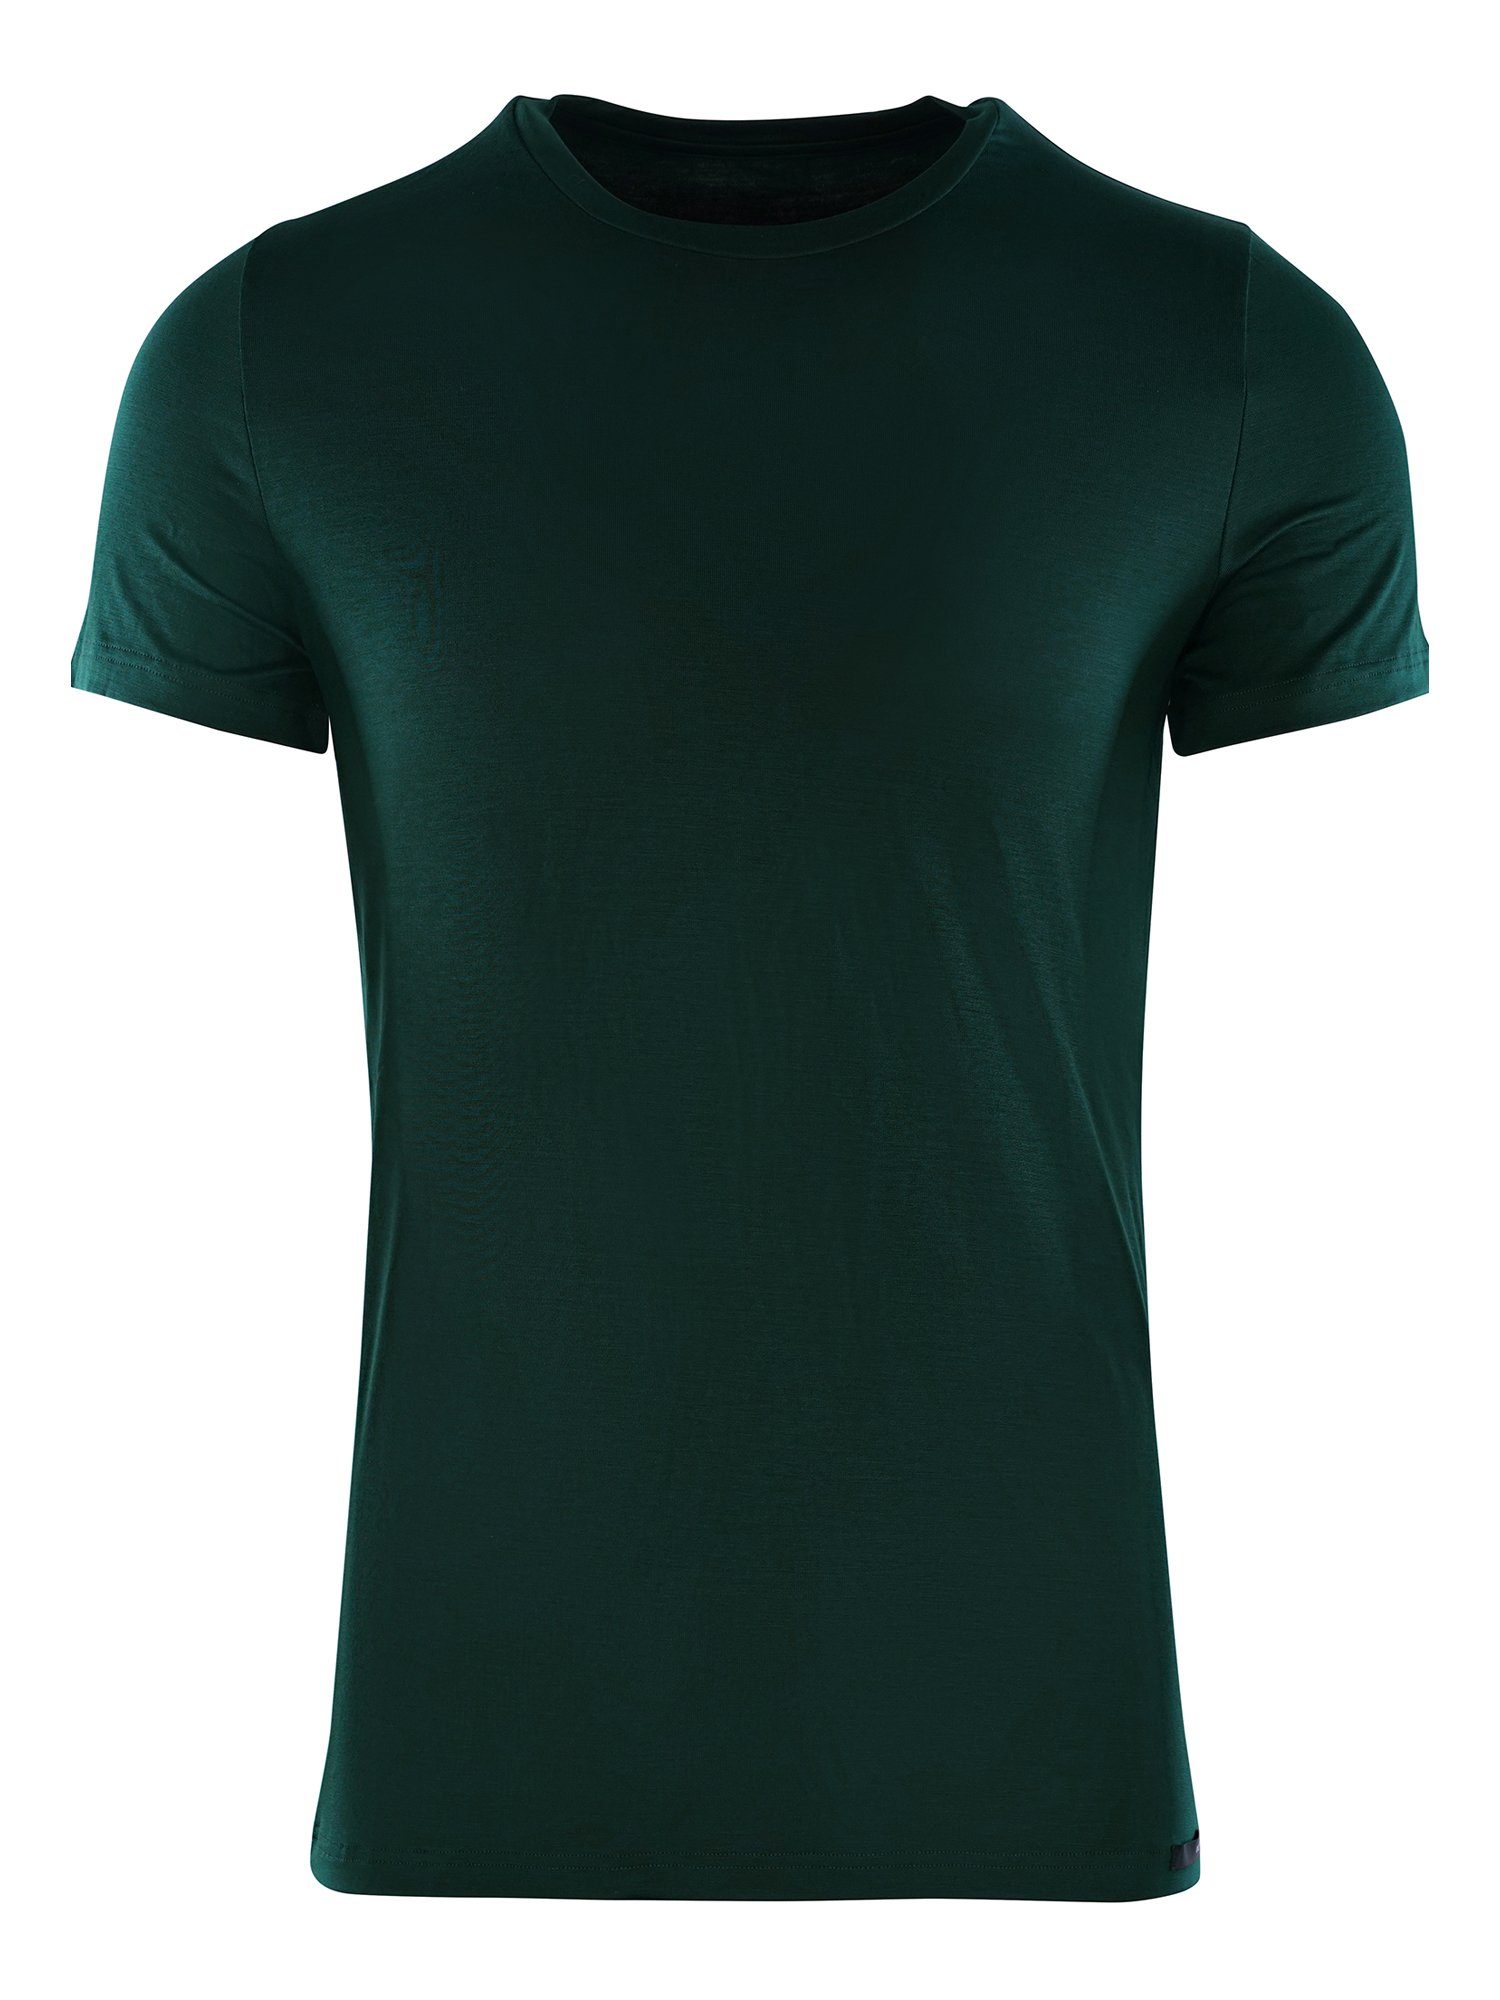 Hom T-Shirt Tencel Soft T-Shirt unterziehshirt unterhemd dark green